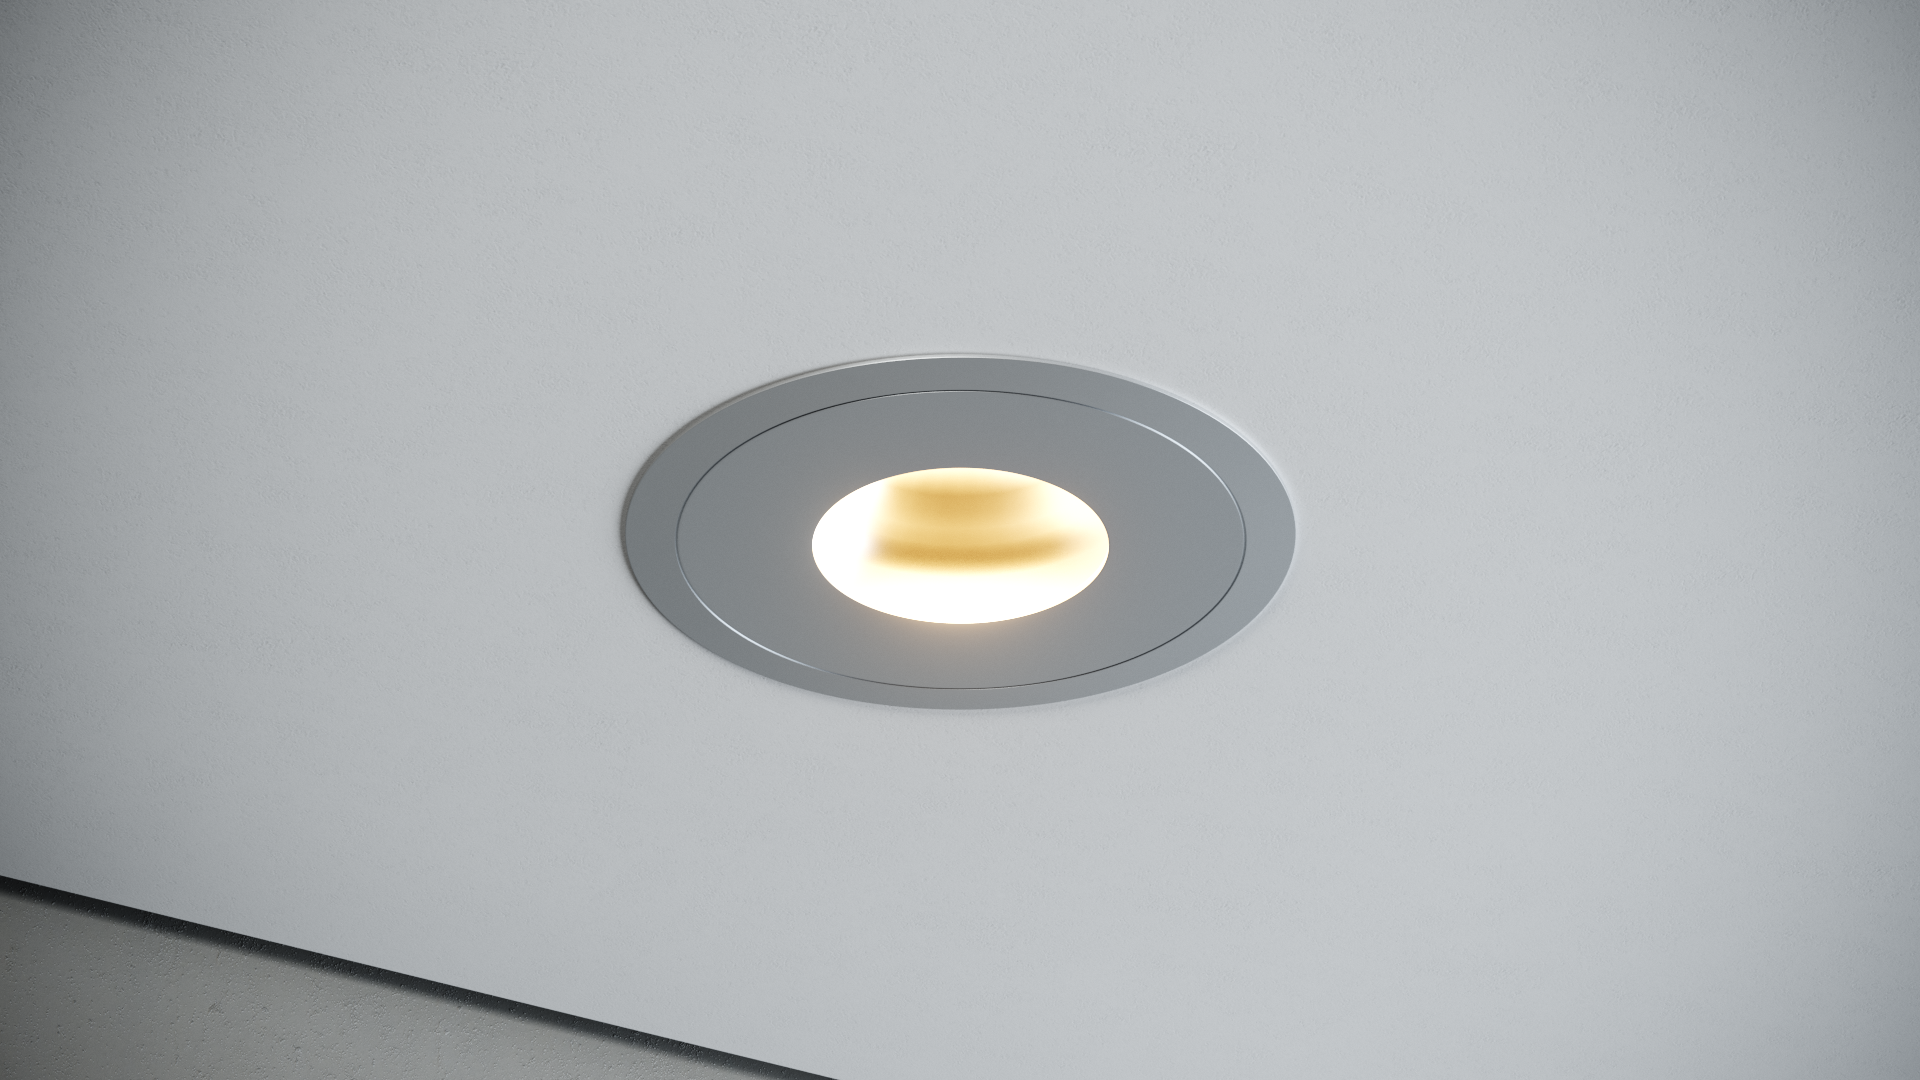 Quest Light Светильник встраиваемый, поворотный, алюминий, LED 9,2w 2700K 460lm, IP20 TWISTER Z Ring D aluminium